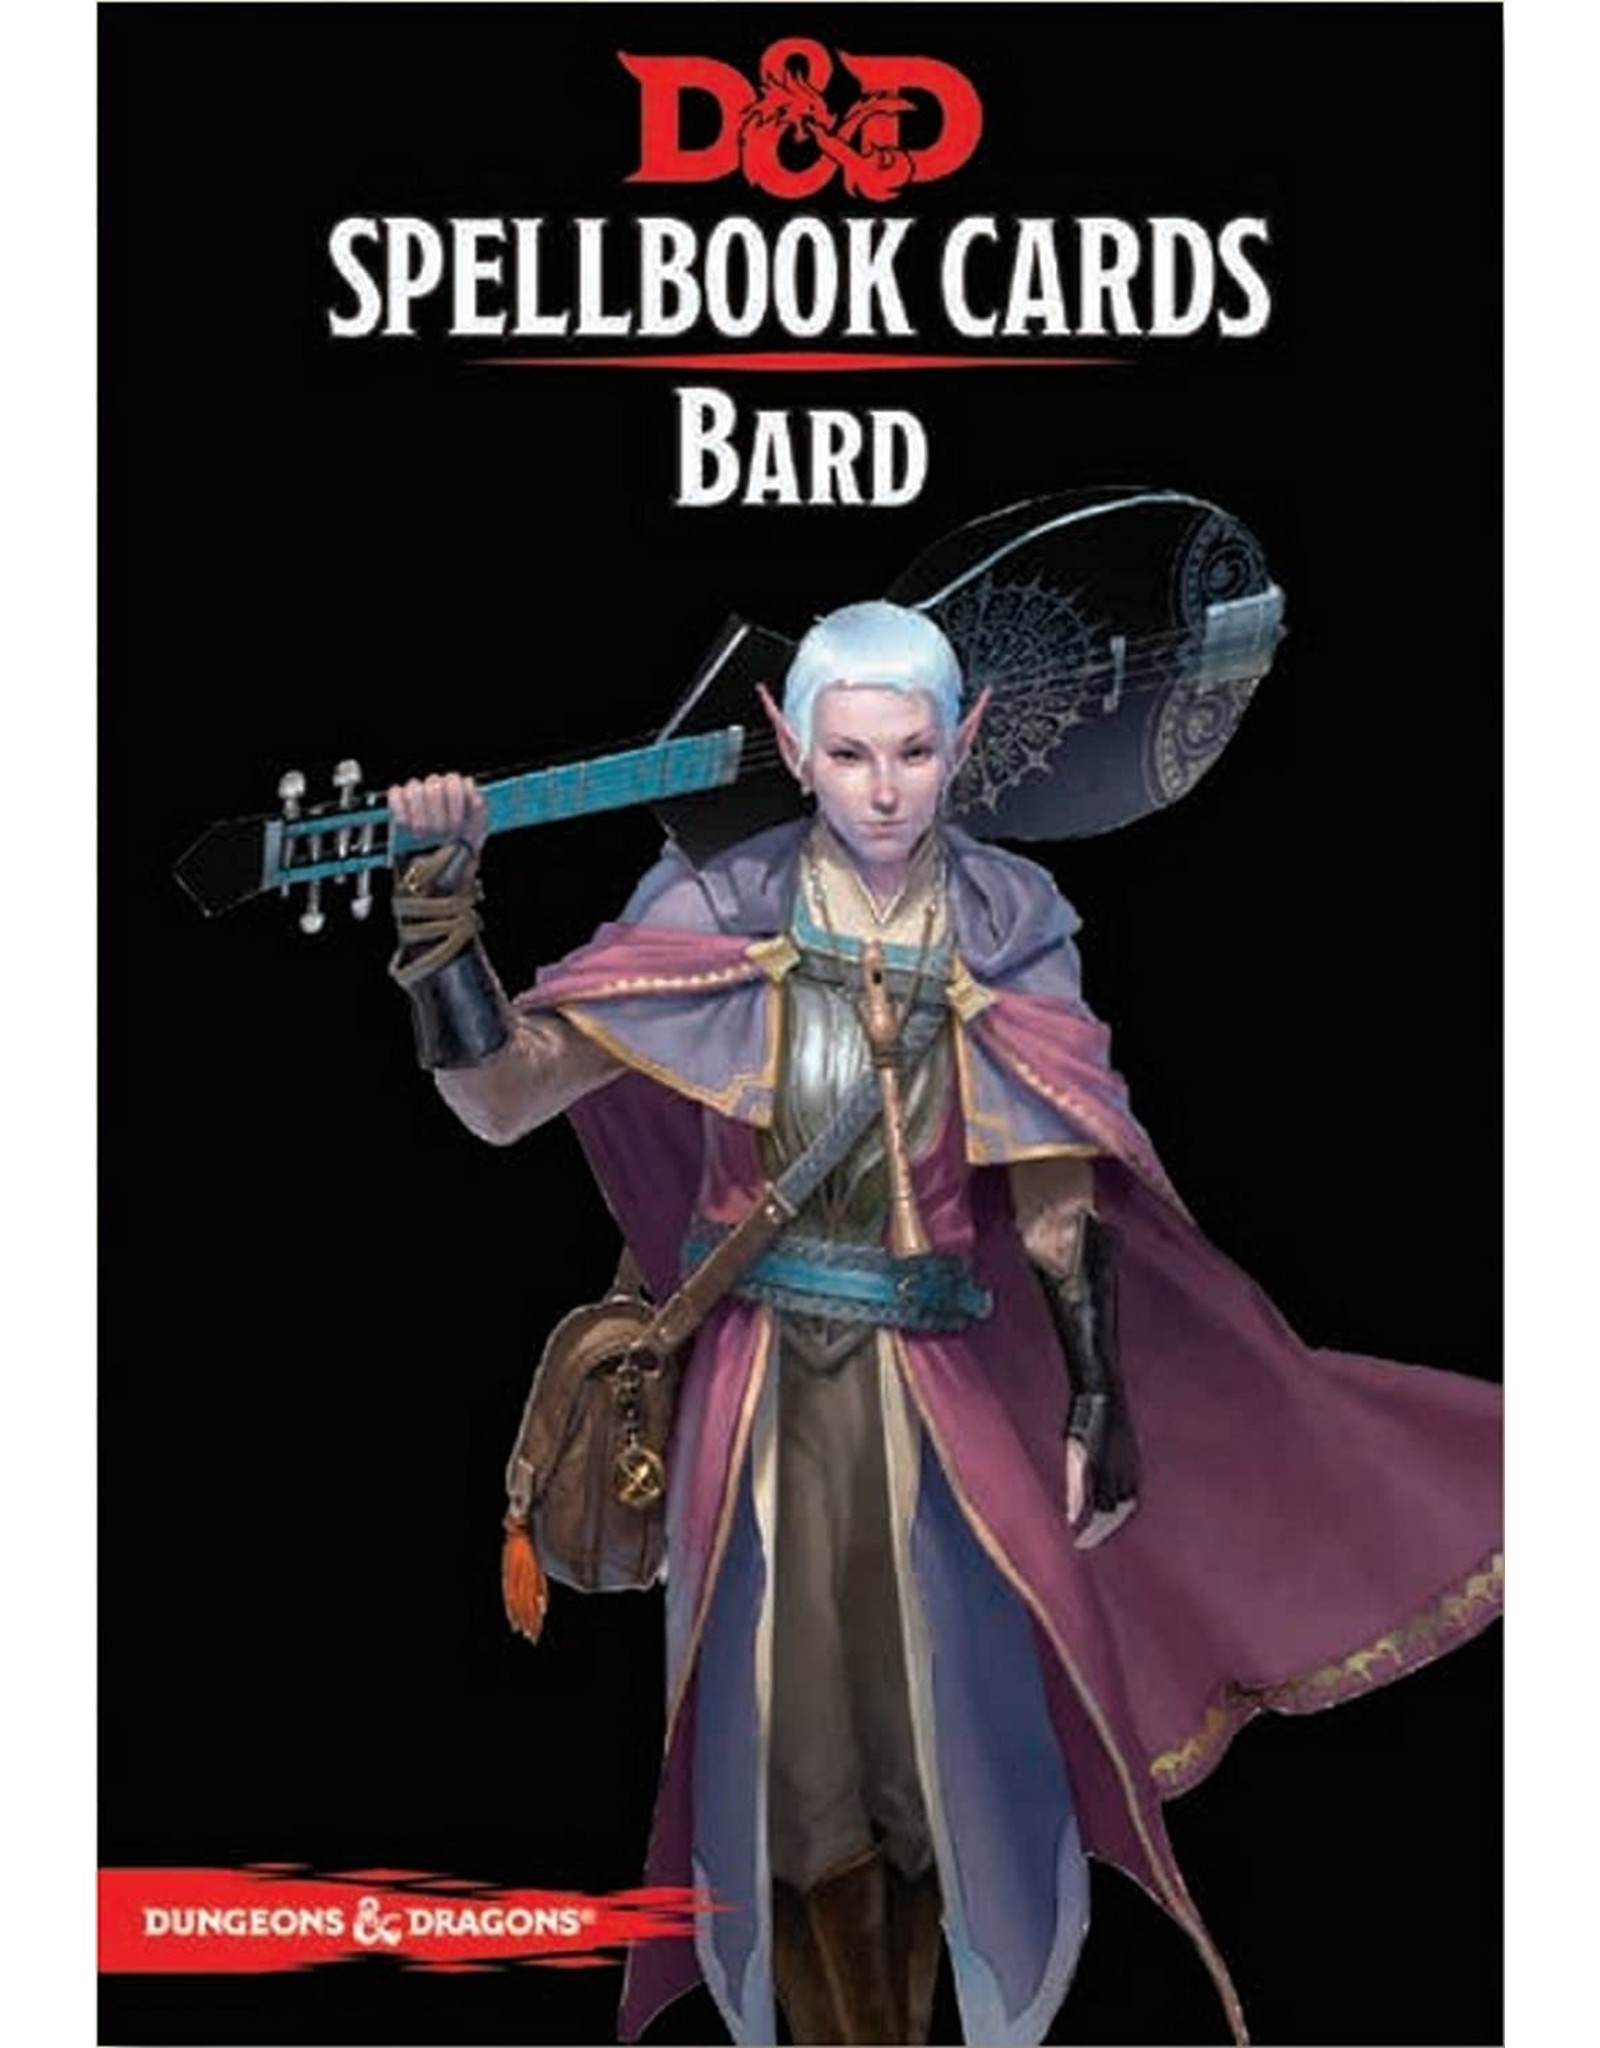 D&D Spellbook Cards: Bard Deck